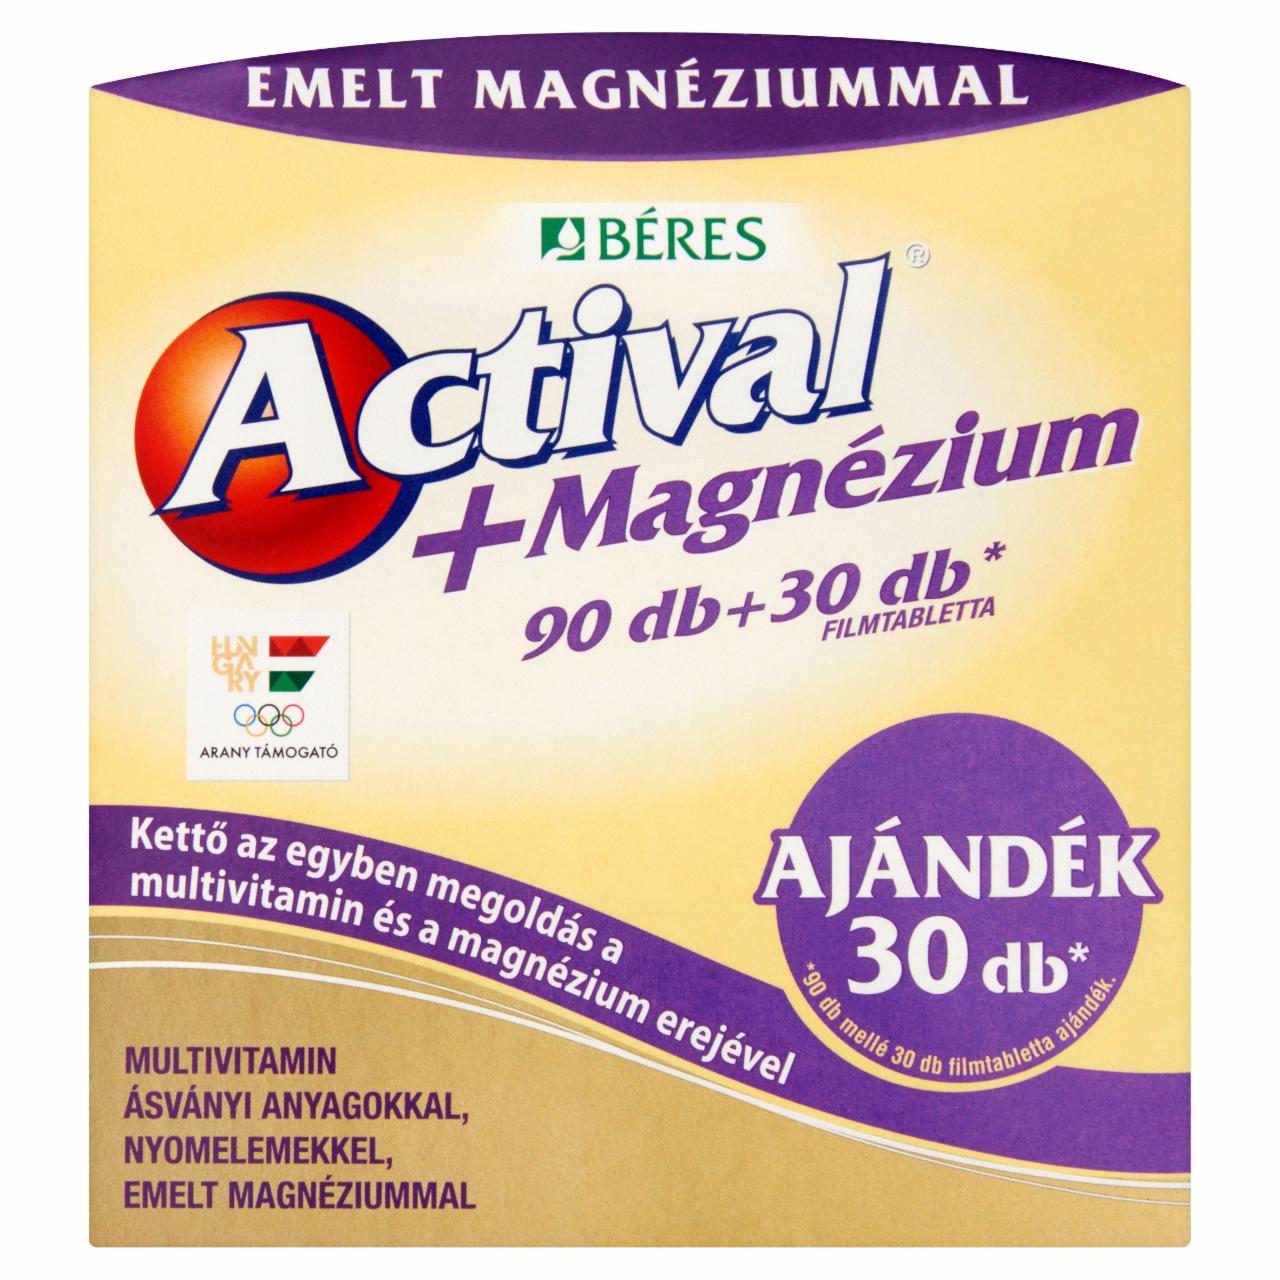 Photo - Béres Actival+Magnesium Tablets 90 + 30 pcs 173 g